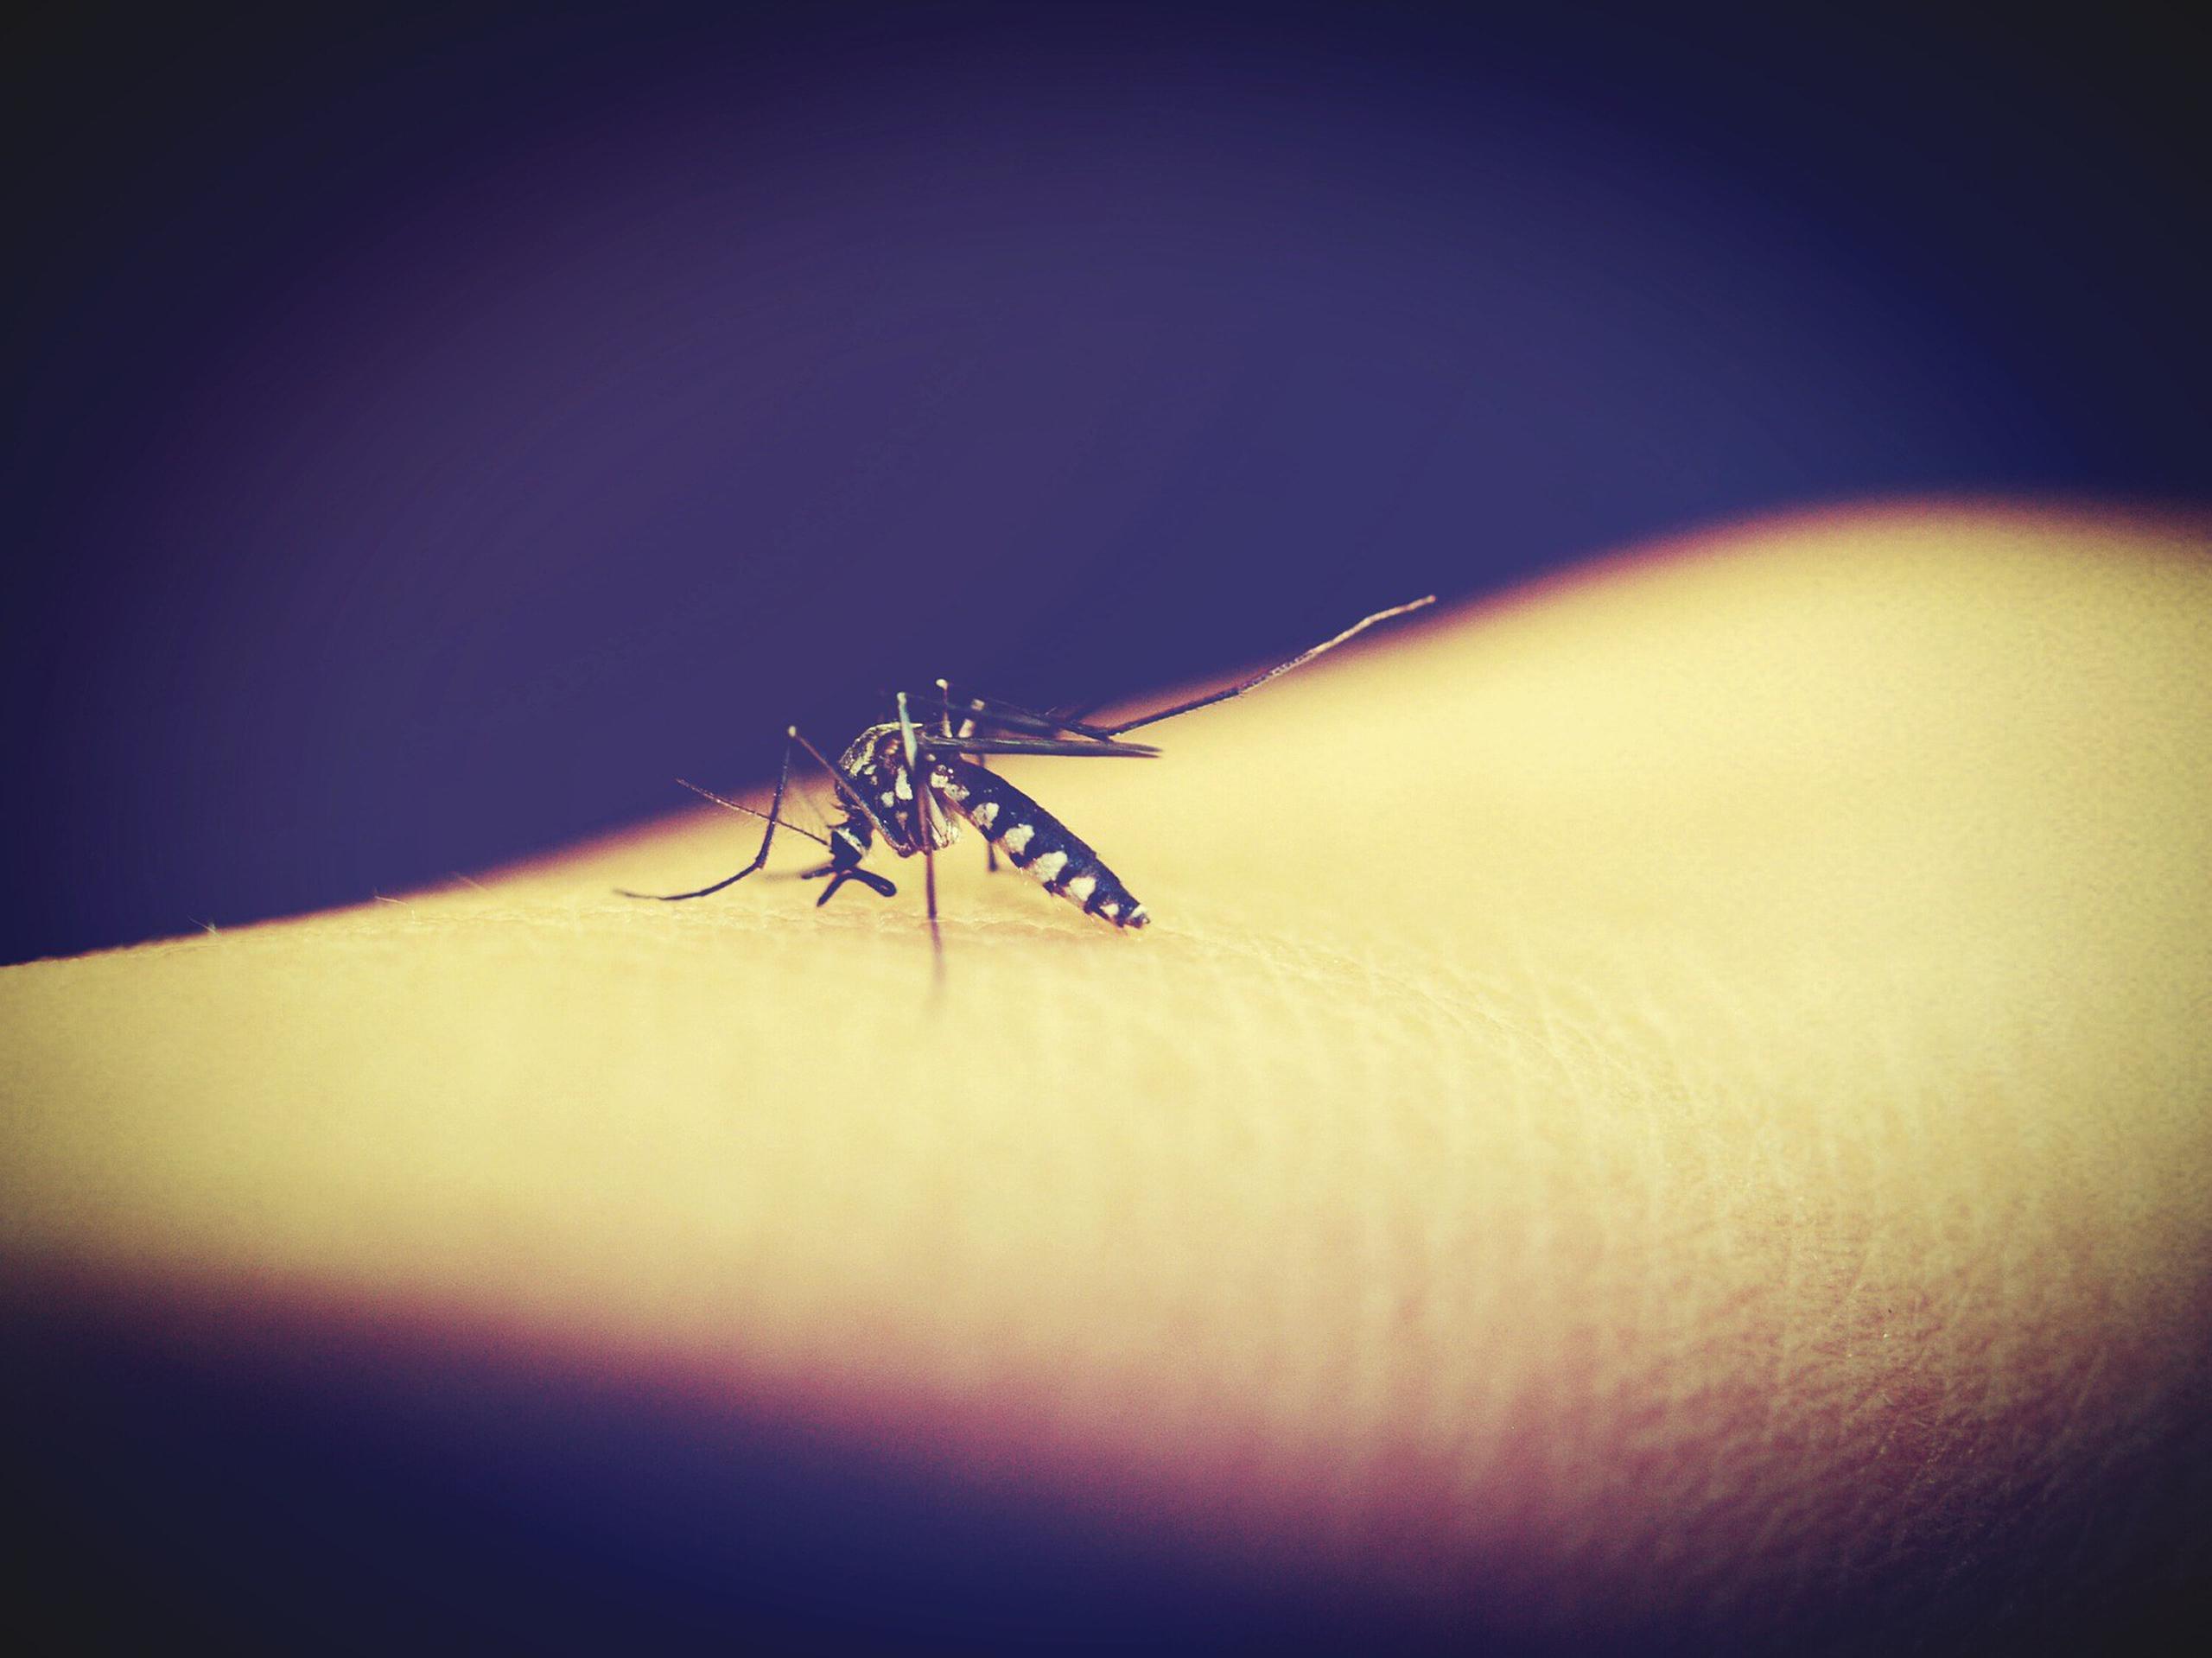 Se conocen dos cepas del virus zika: la asiática y la africana y el nuevo tipo encontrado en Brasil es de origen africano. (Pixabay)